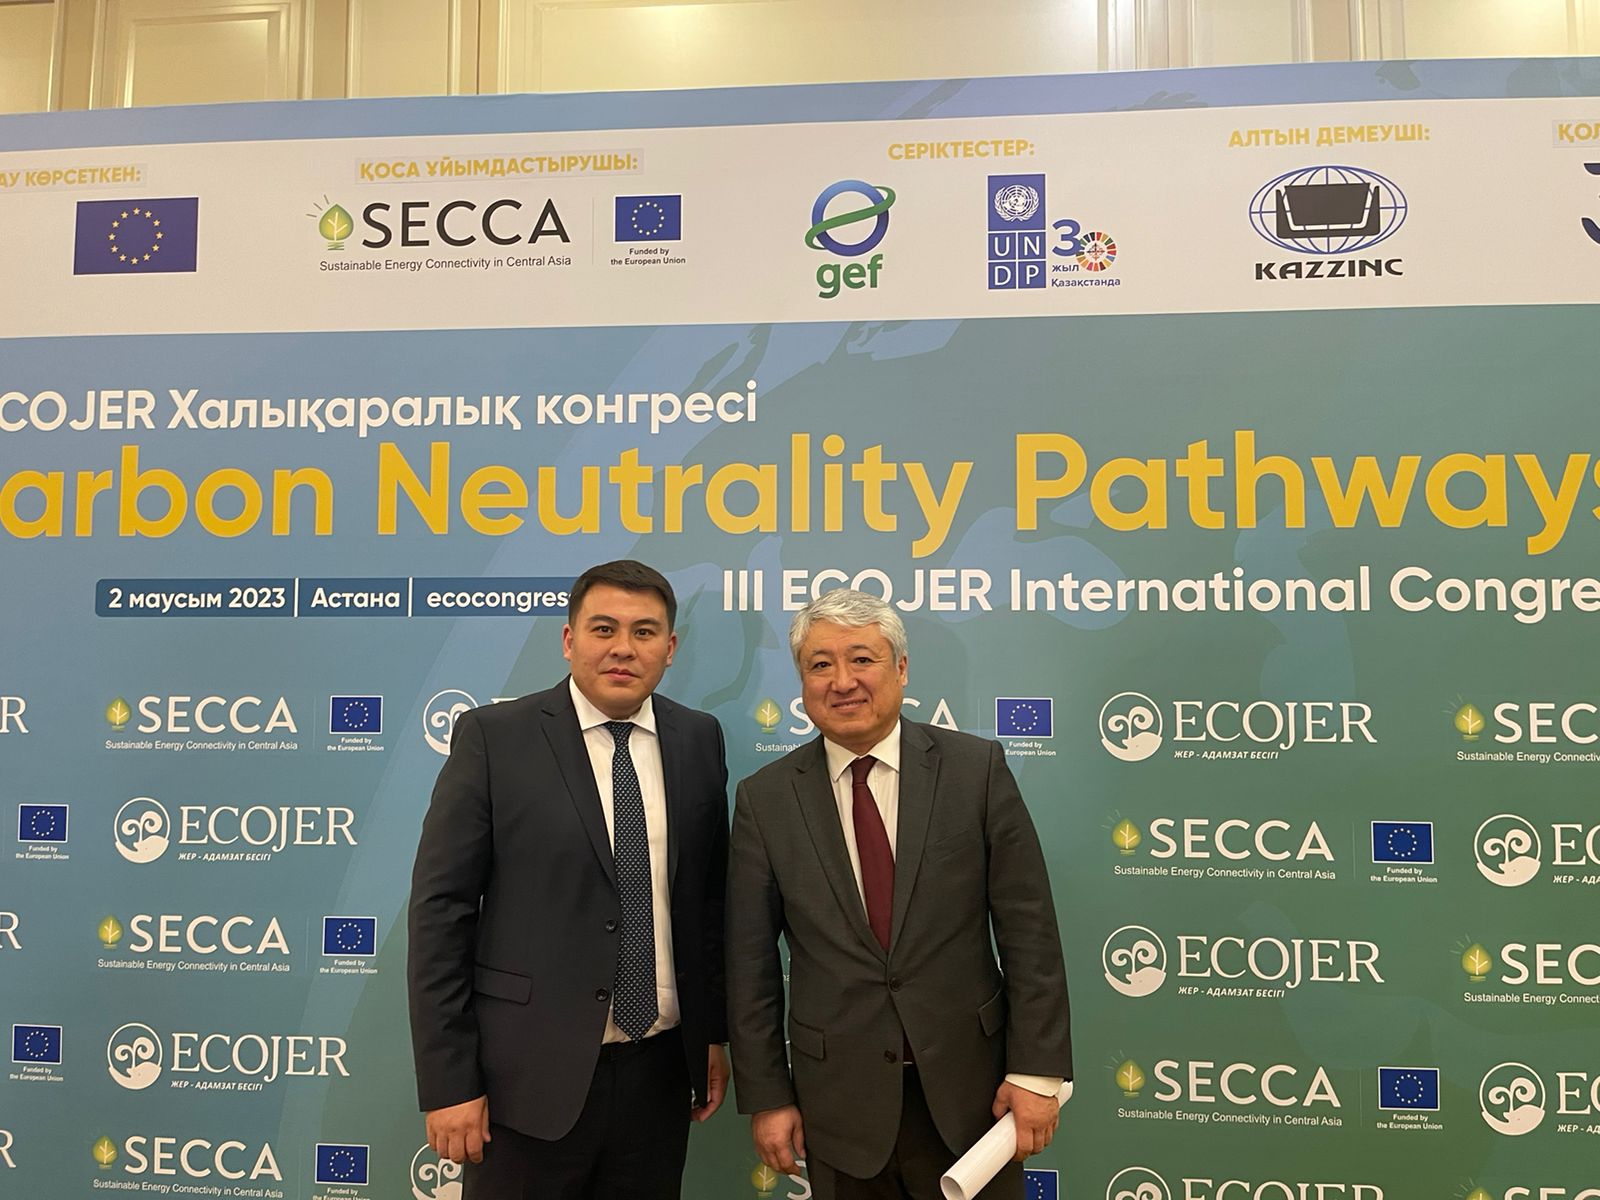 Участие GTH в III Международном конгрессе Ecojer Carbon Neutrality Pathways